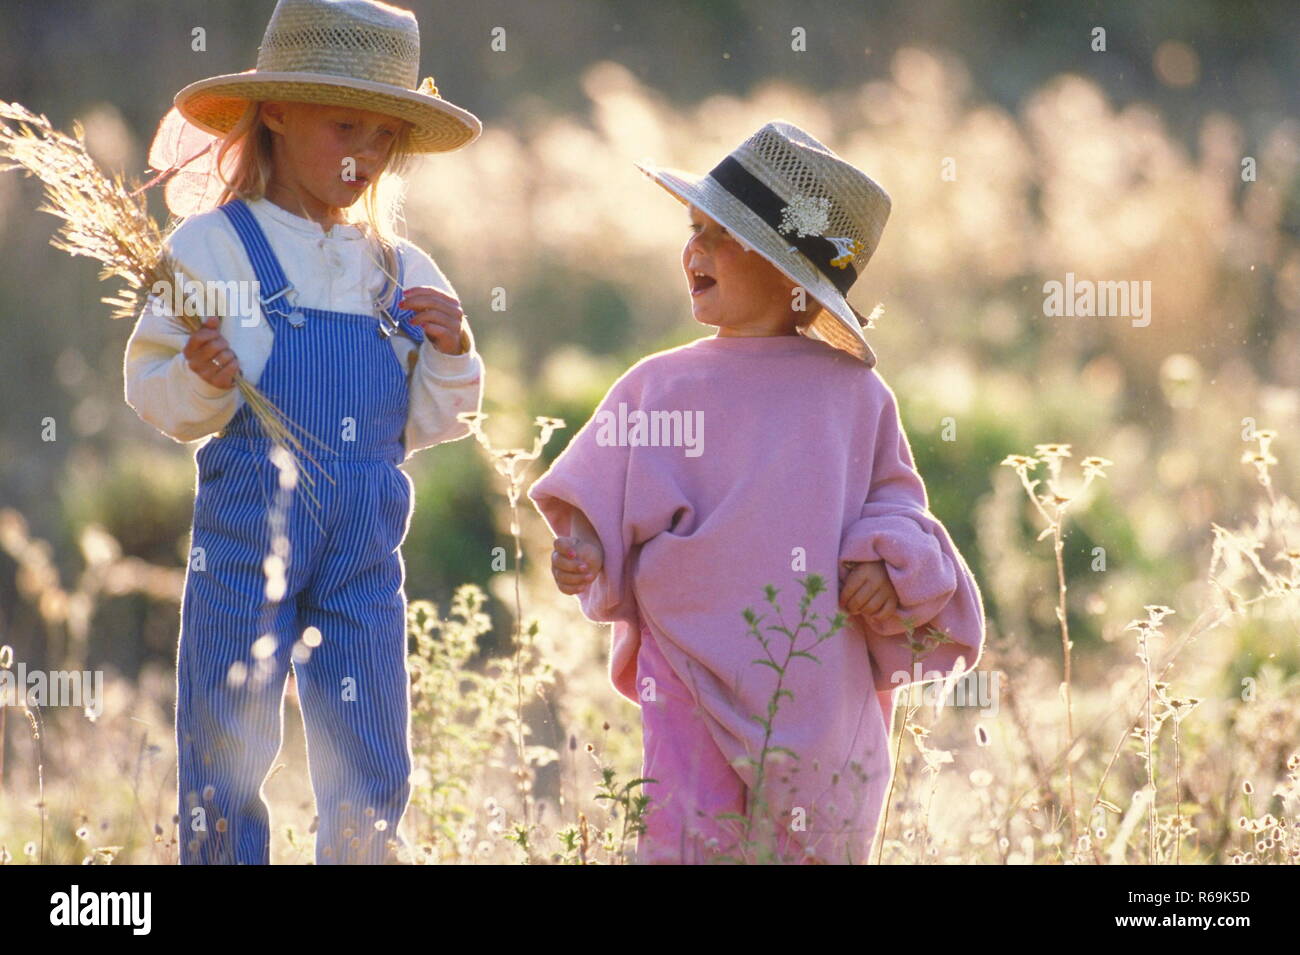 Portrait, 2 Schwestern mit Strohhueten, 4 und 6 Jahre, stehen im Spaetsommer in einer Wildwiese und pfluecken einen Strauss trockener Graeser Stock Photo